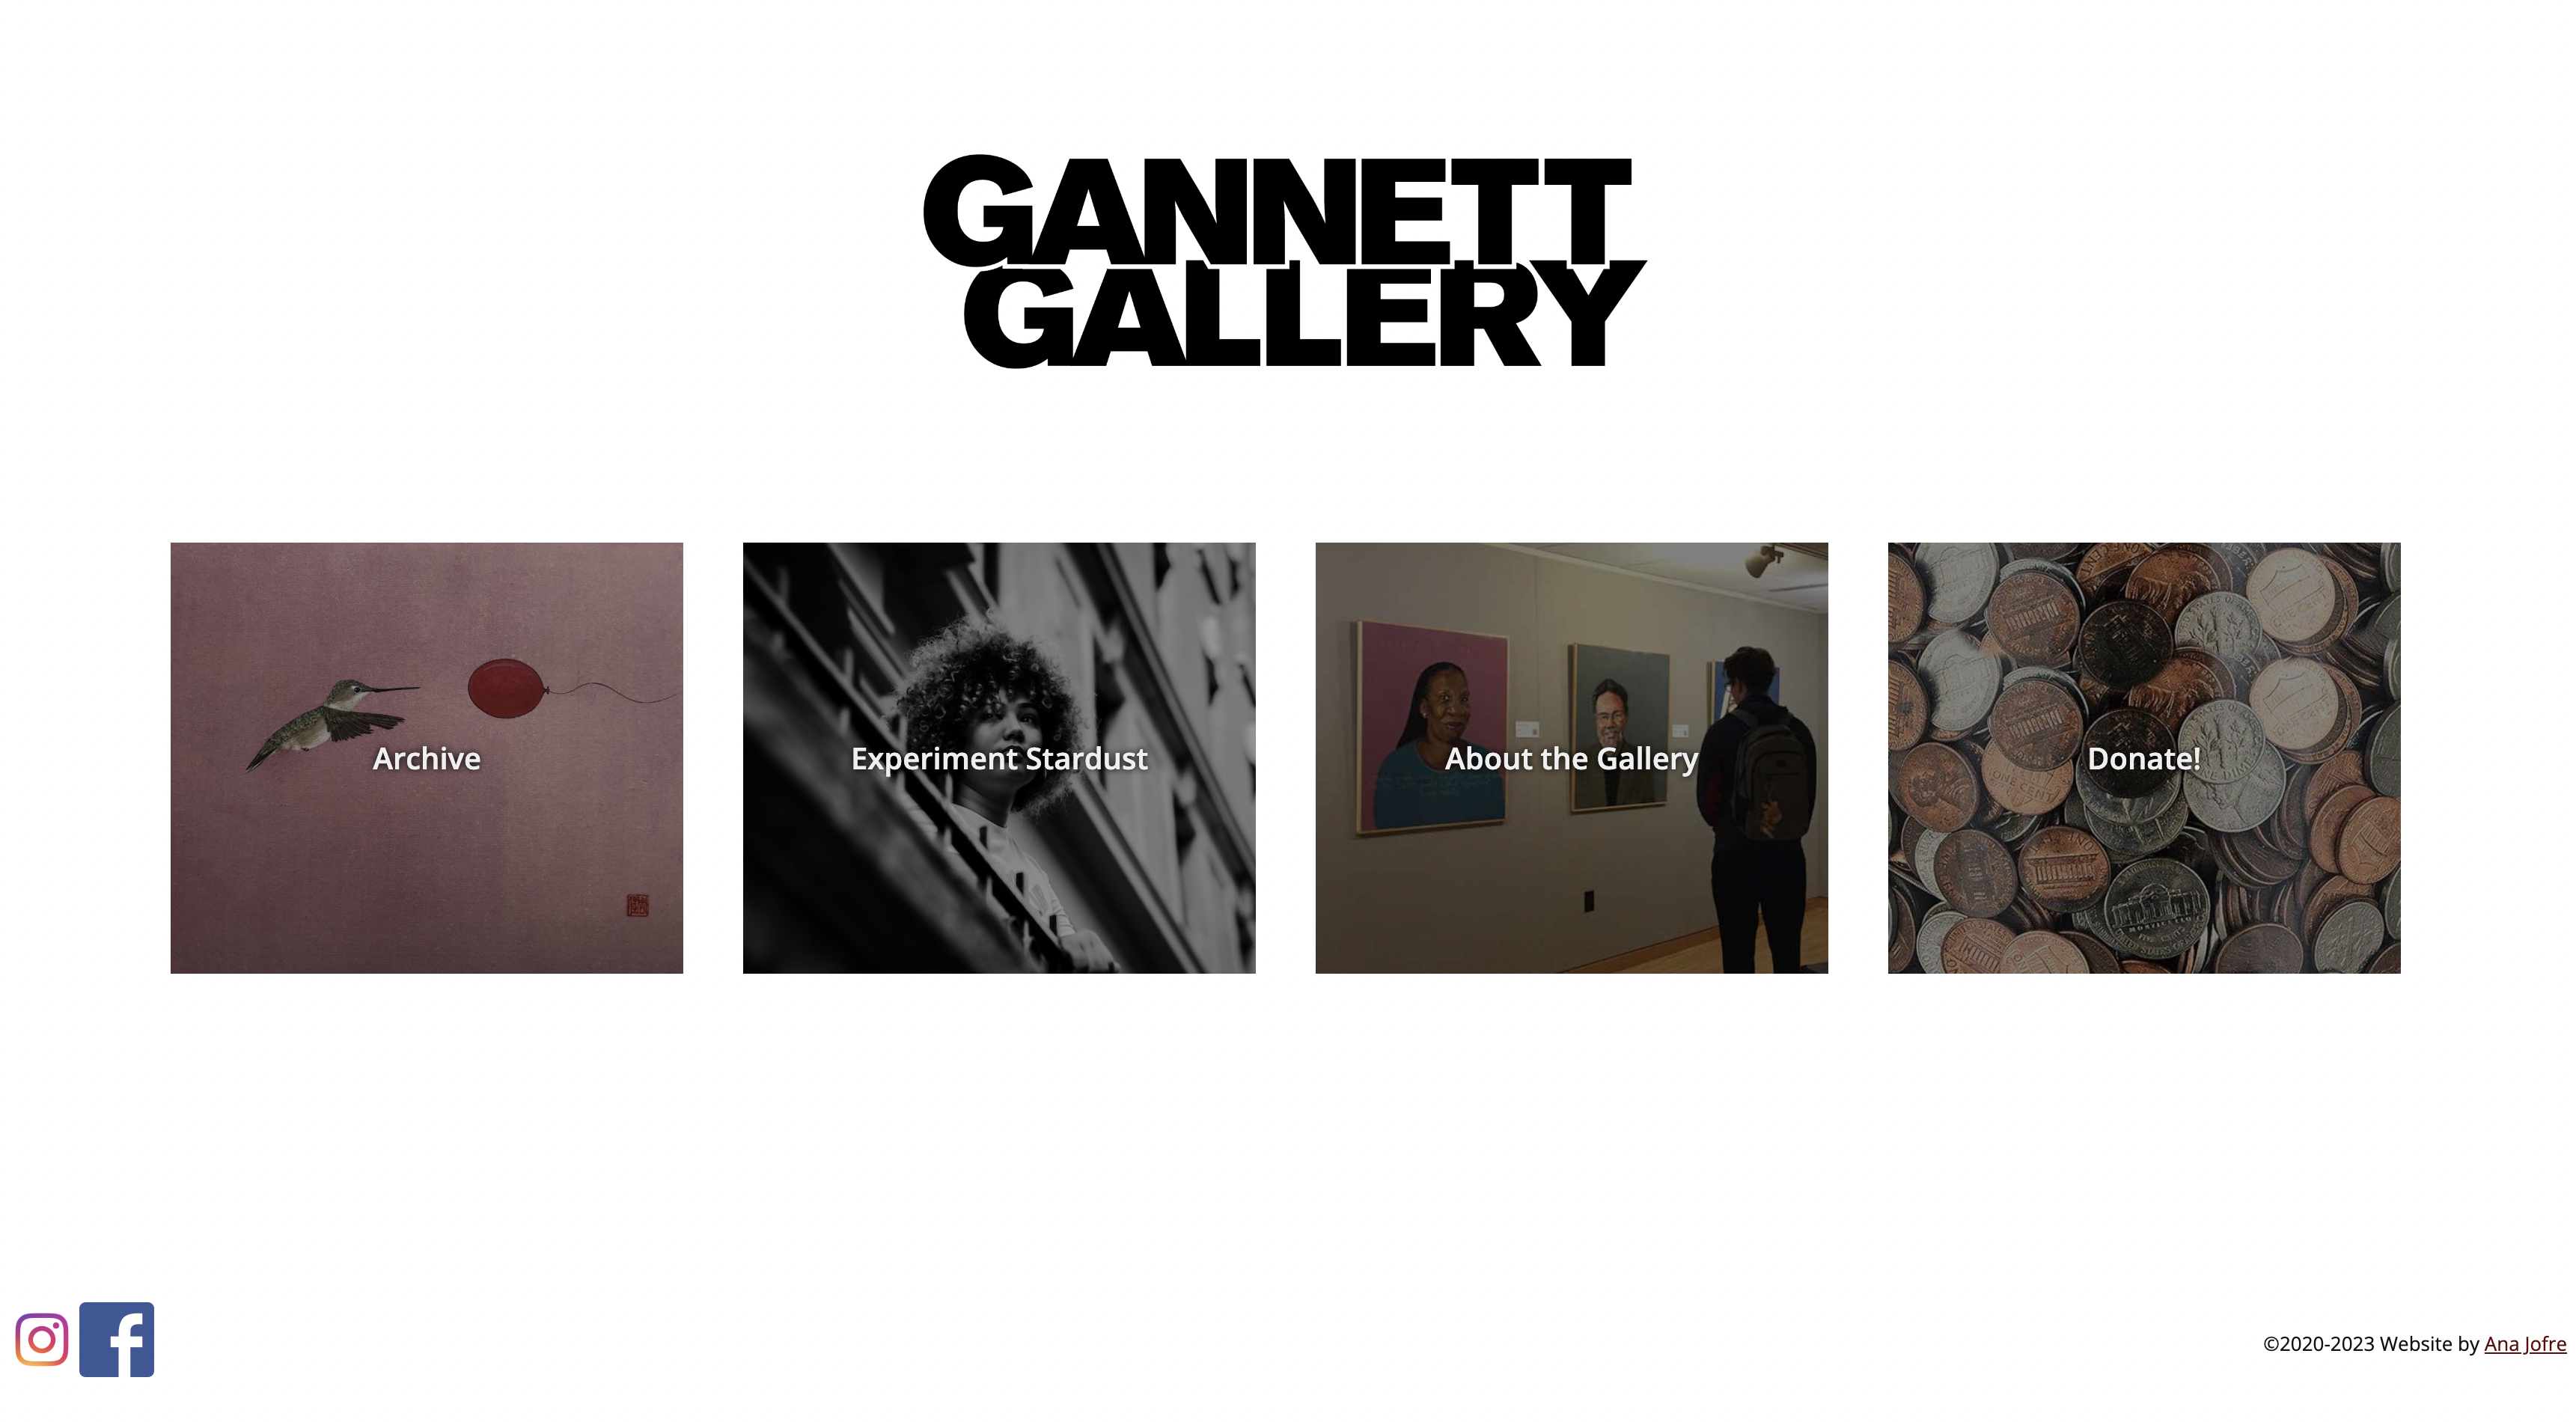 Gannett Gallery